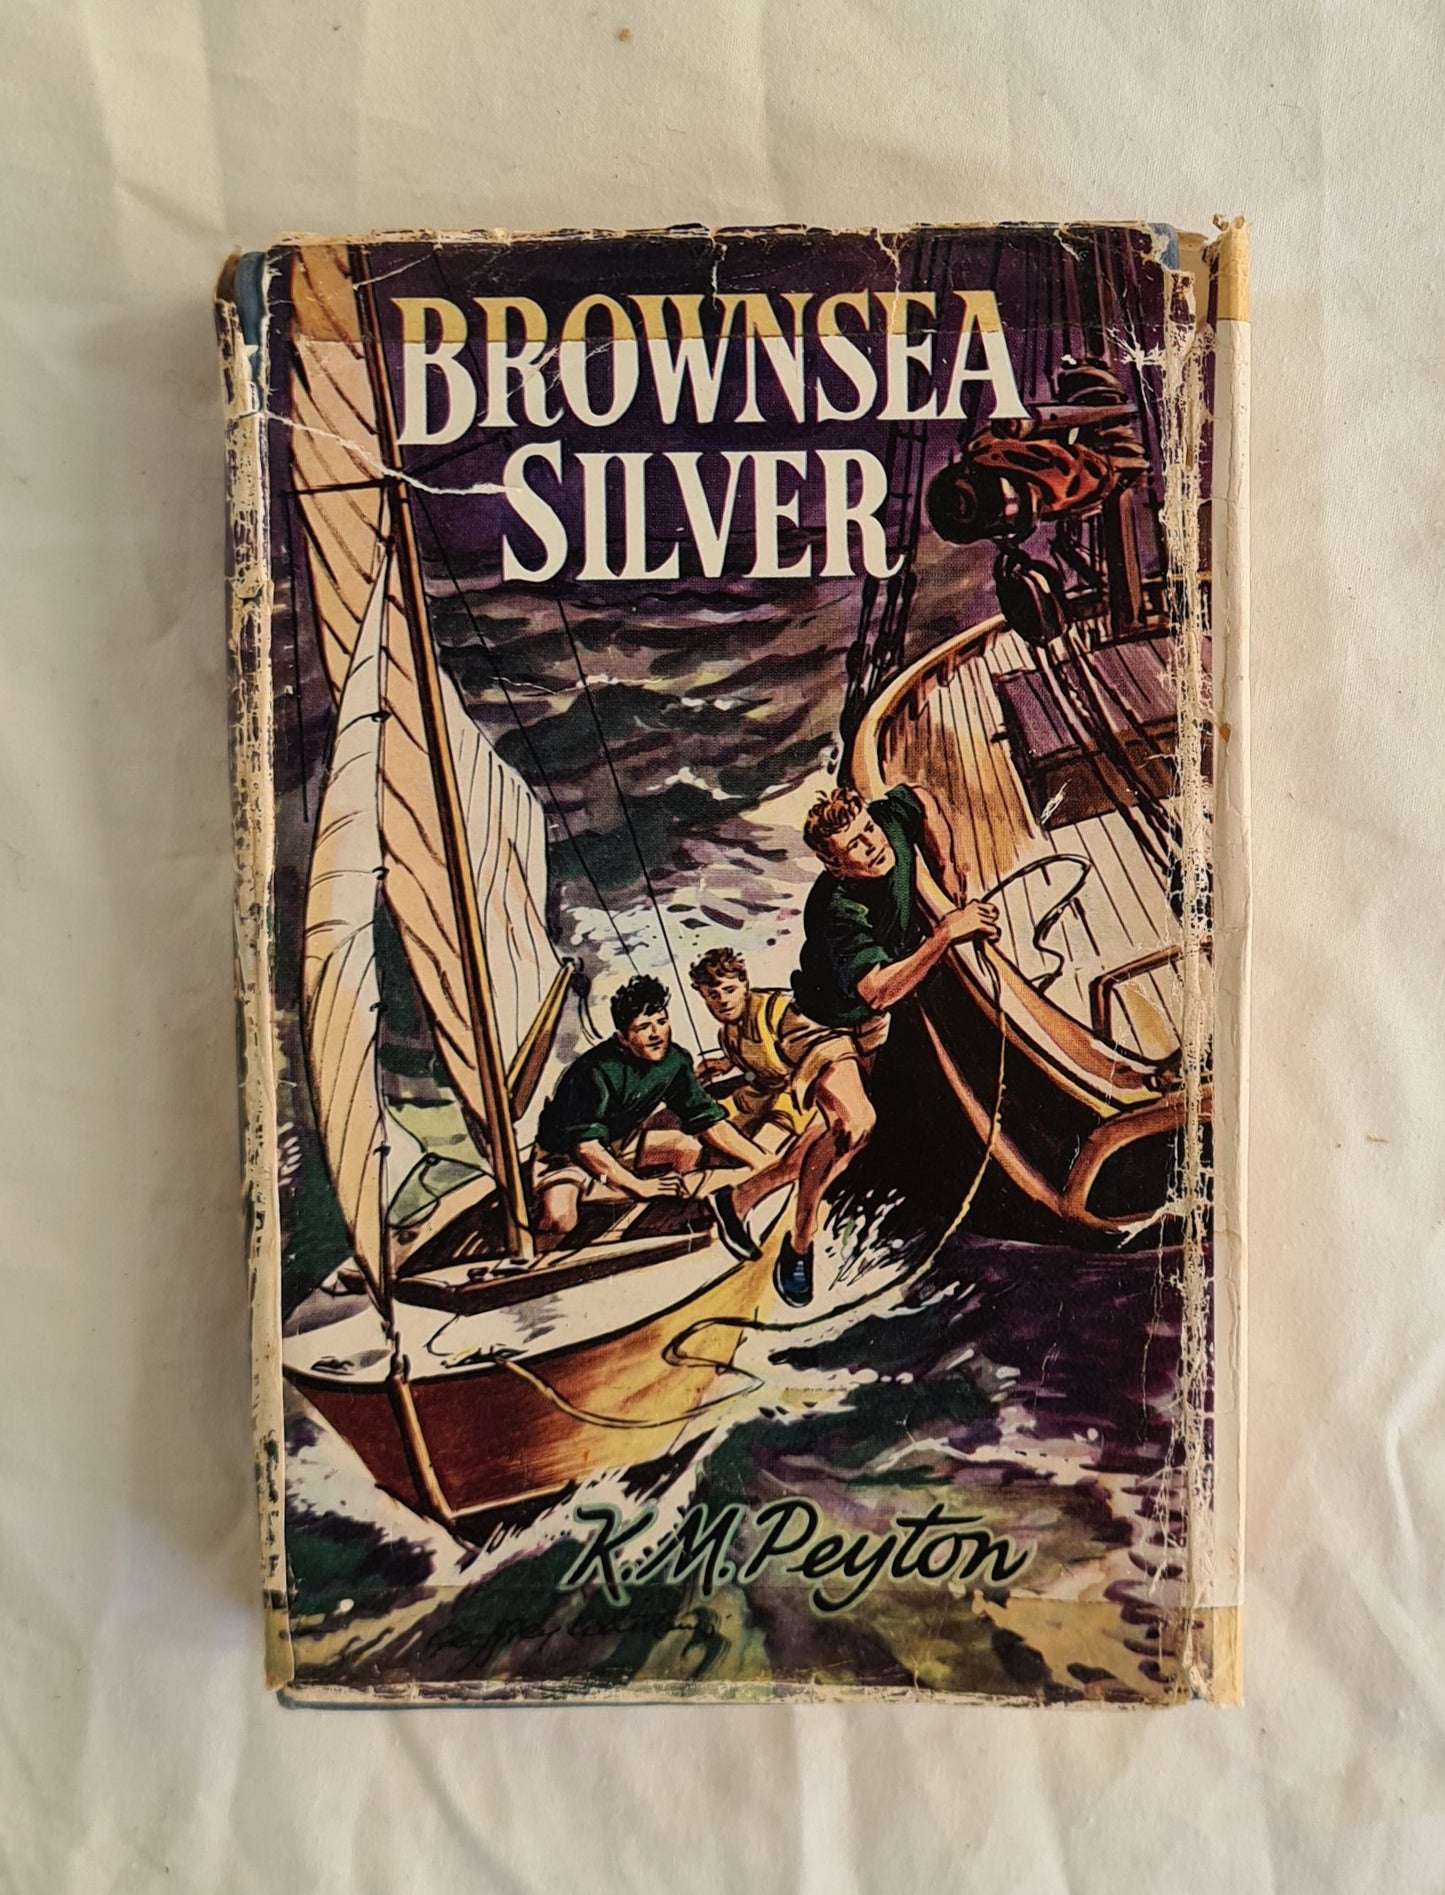 Brownsea Silver by K. M. Peyton